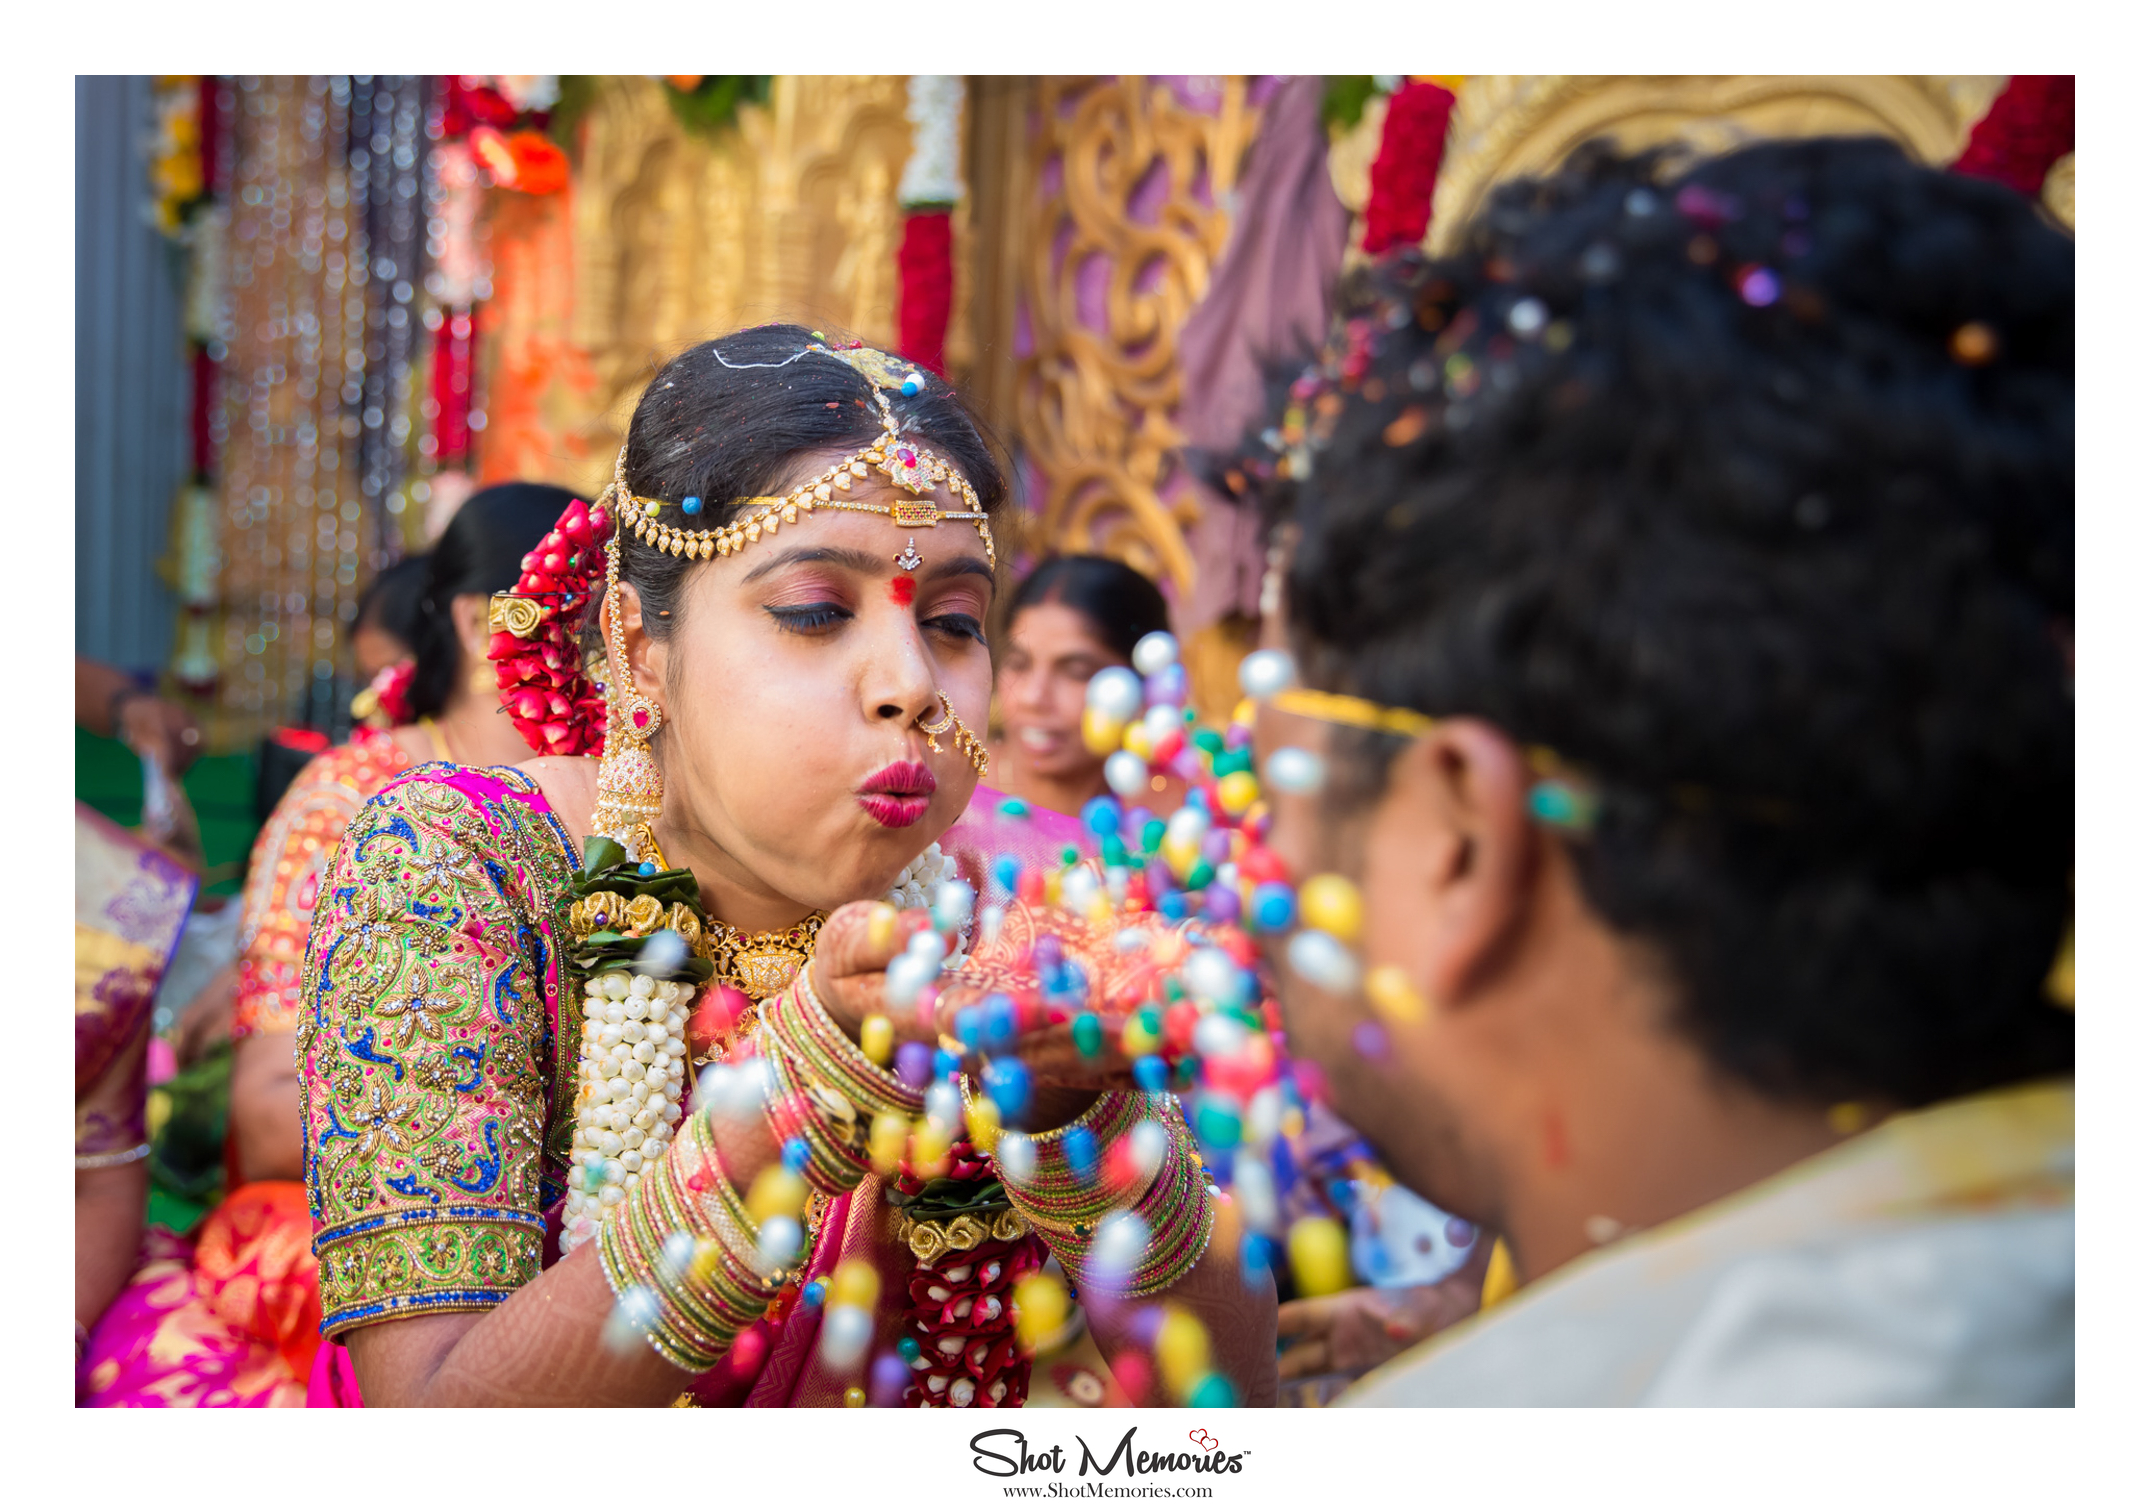 Best Wedding Photography in Hyderabad - Shot Memories